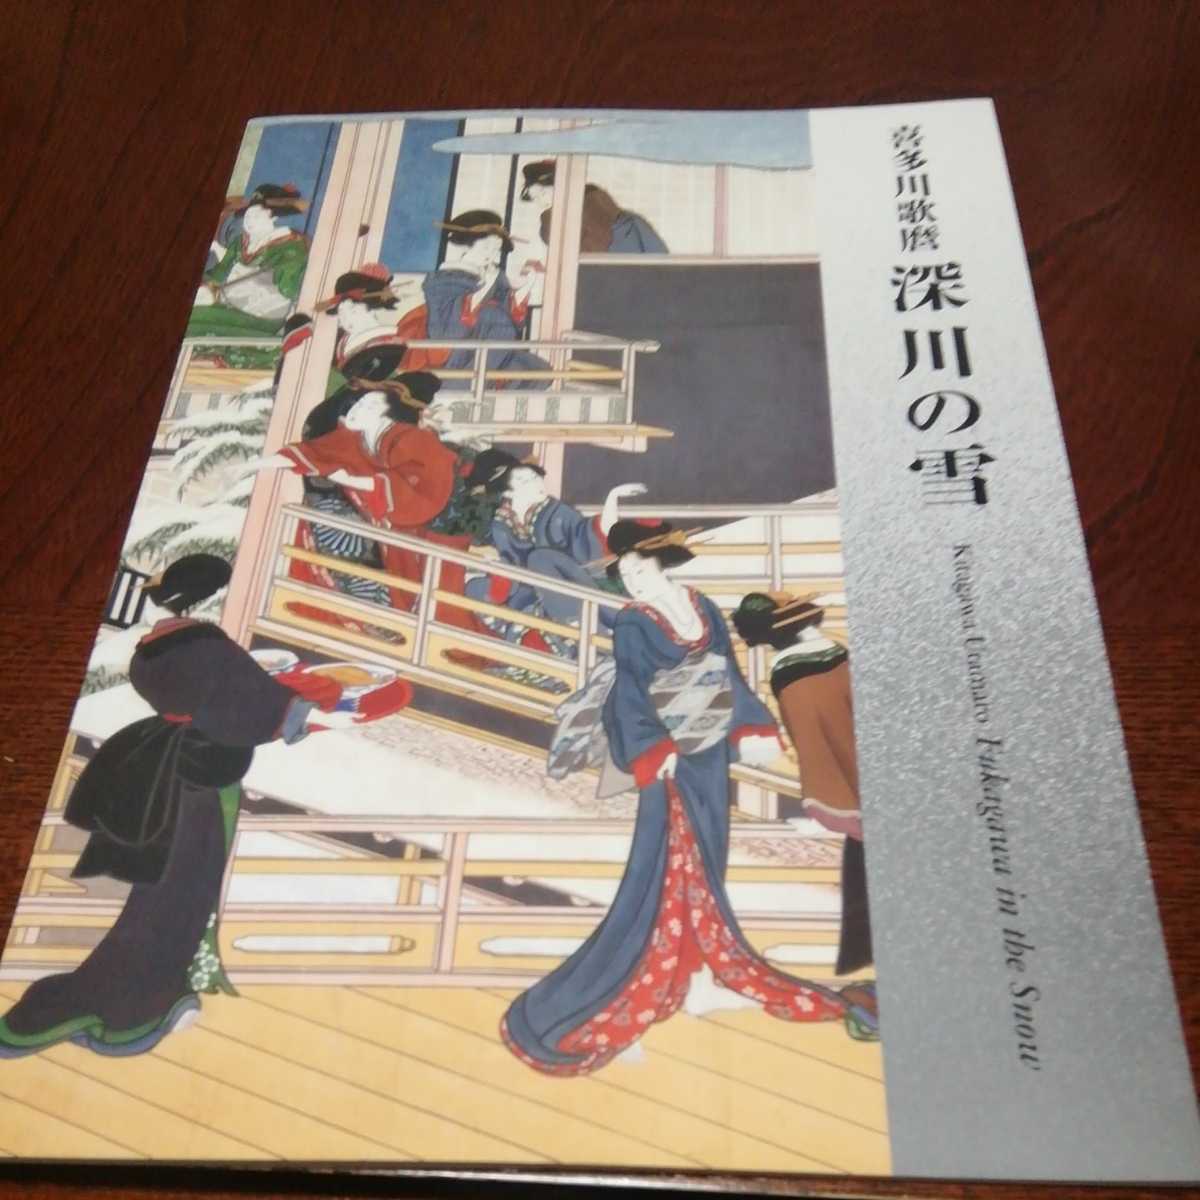 Kitagawa Utamaro: Nieve en el Museo de Arte Fukagawa Okada, Cuadro, Ukiyo-e, Huellas dactilares, Retrato de una mujer hermosa